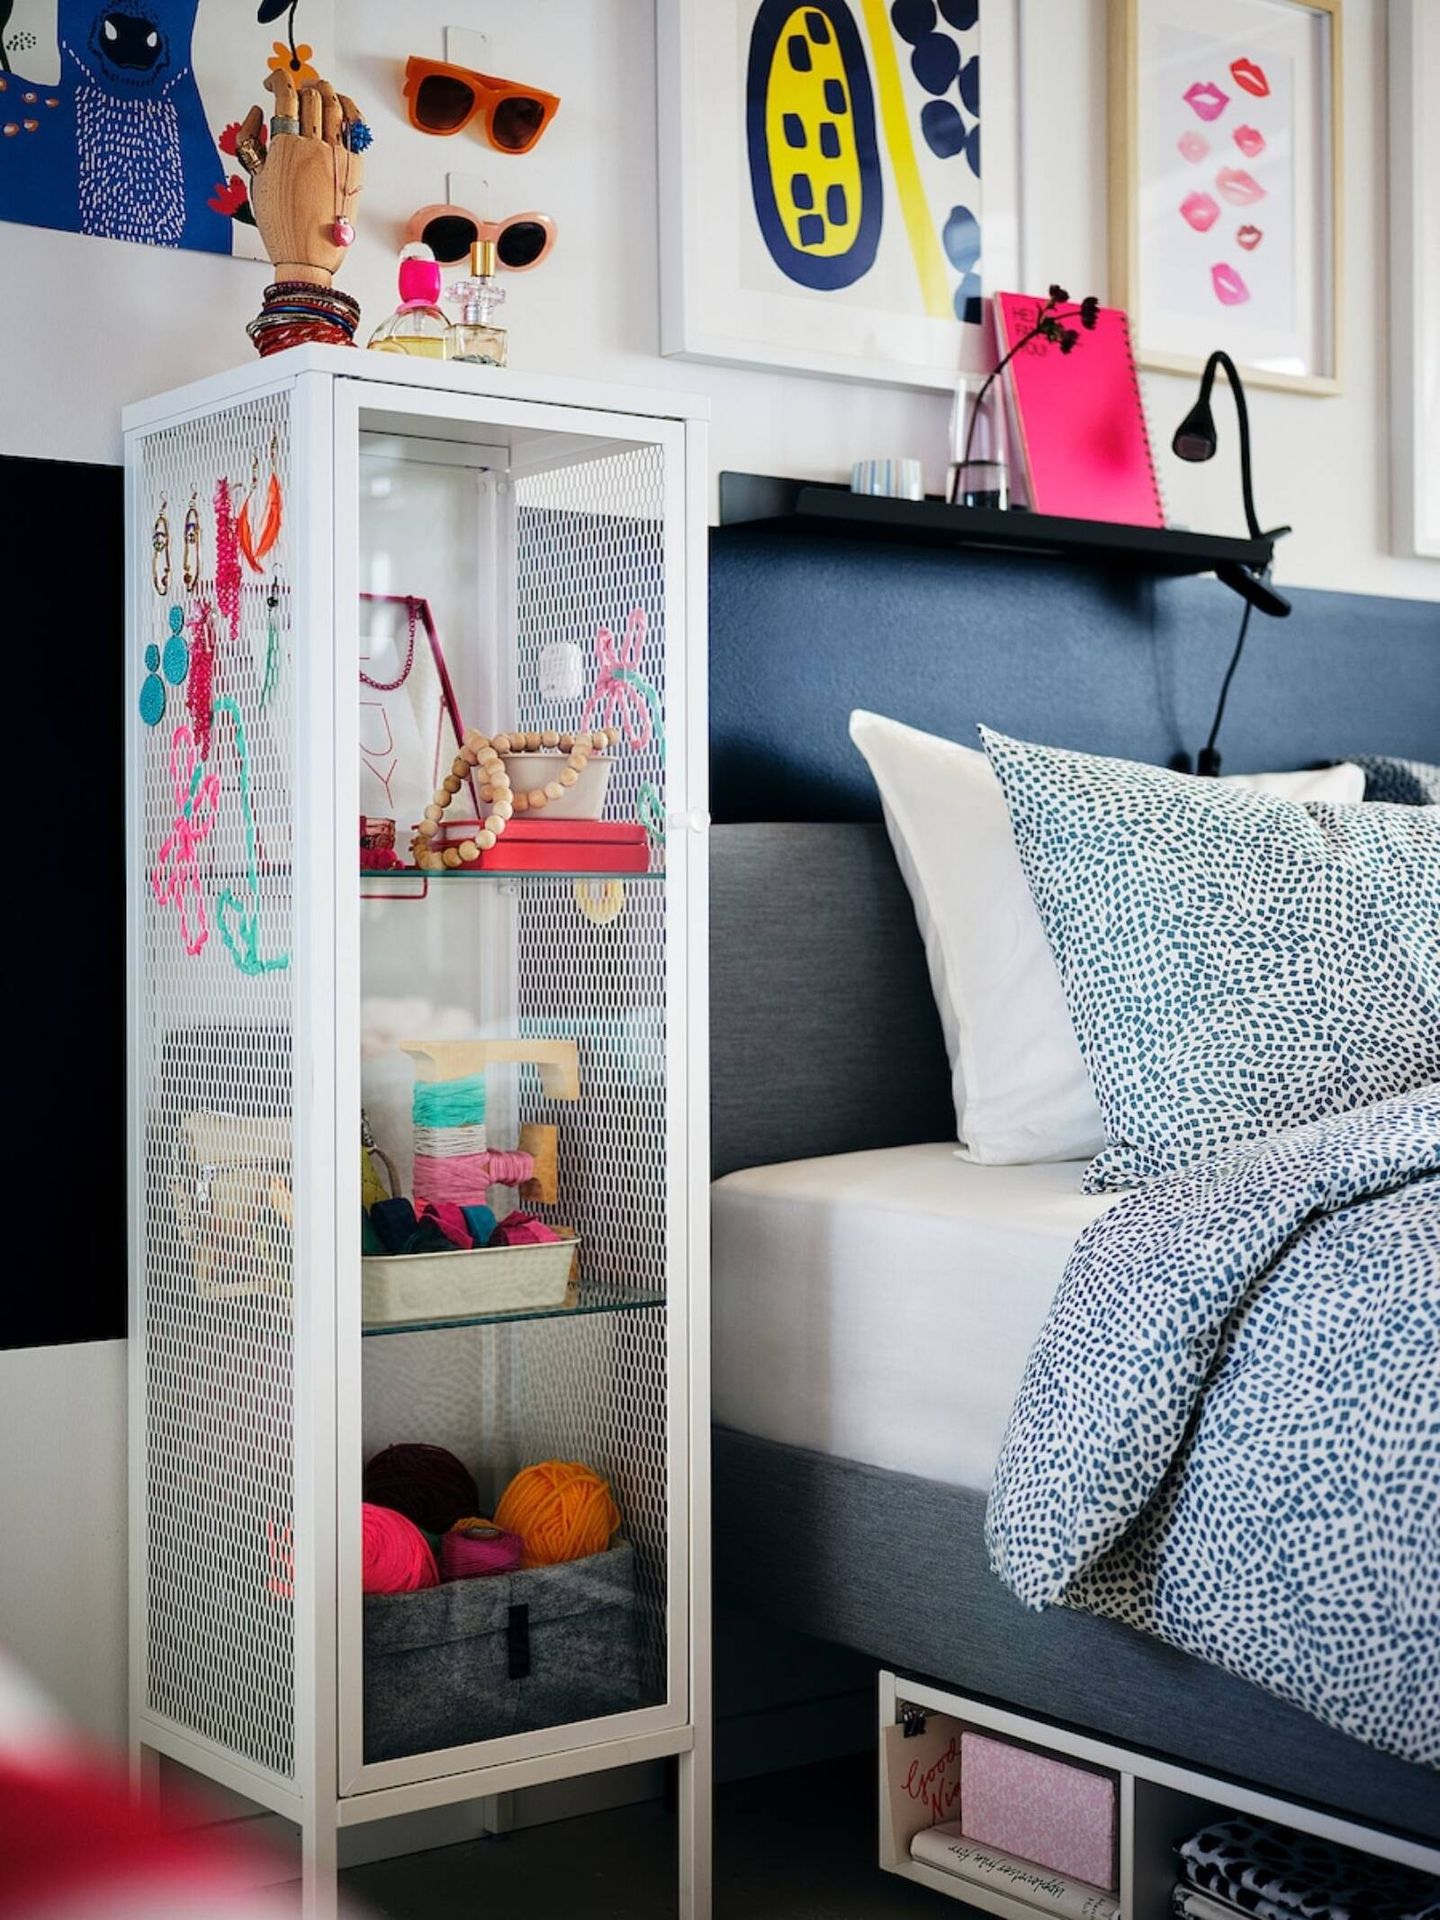 La vitrina de Ikea, el mueble ideal para una casa elegante y ordenada. (Cortesía)